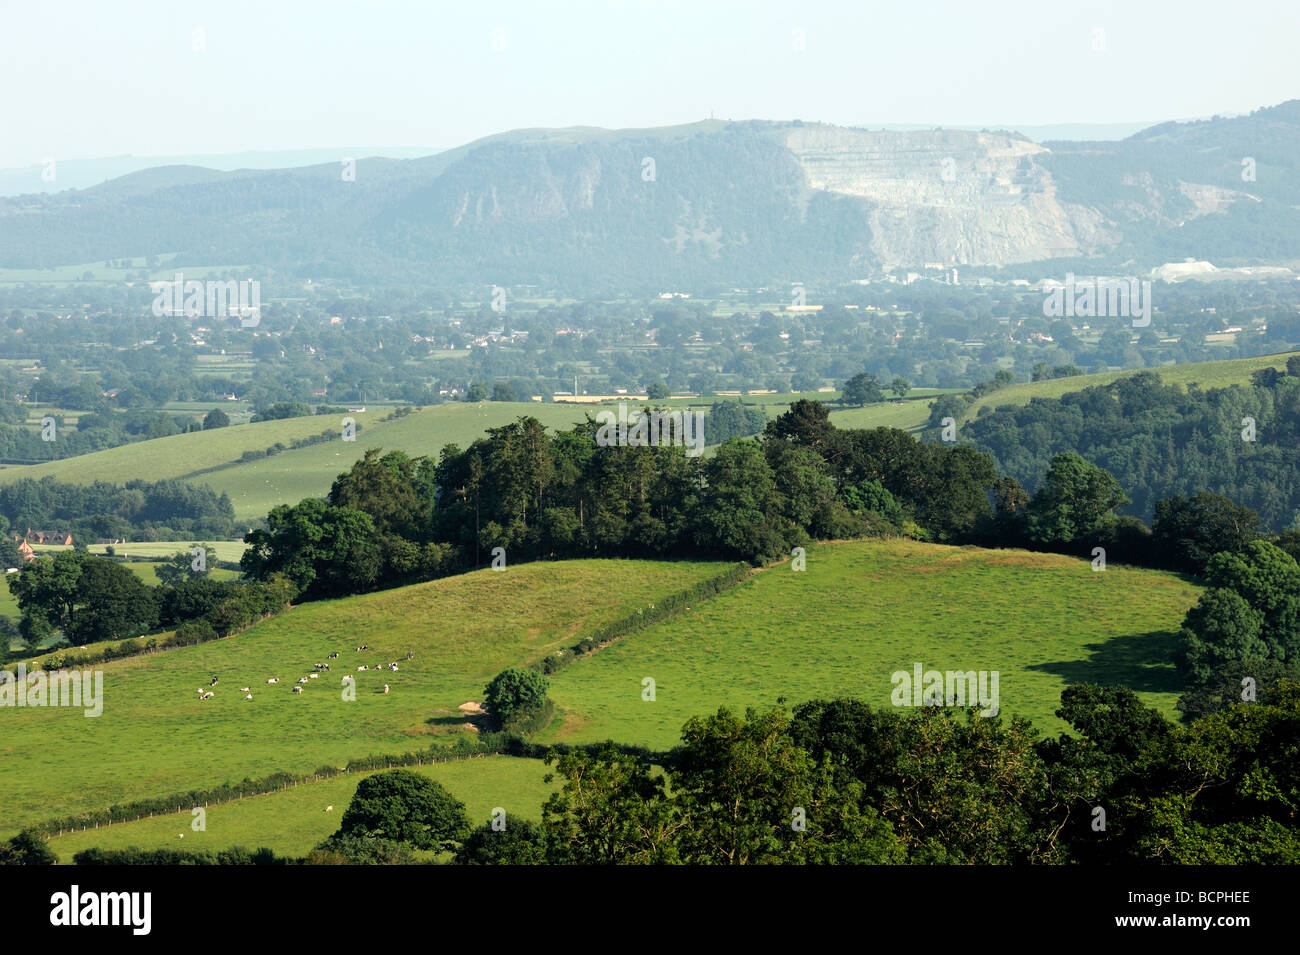 Blick vom in der Nähe von Nantmawr in Richtung Llanymynech Hill Shropshire Grenzen Stockfoto